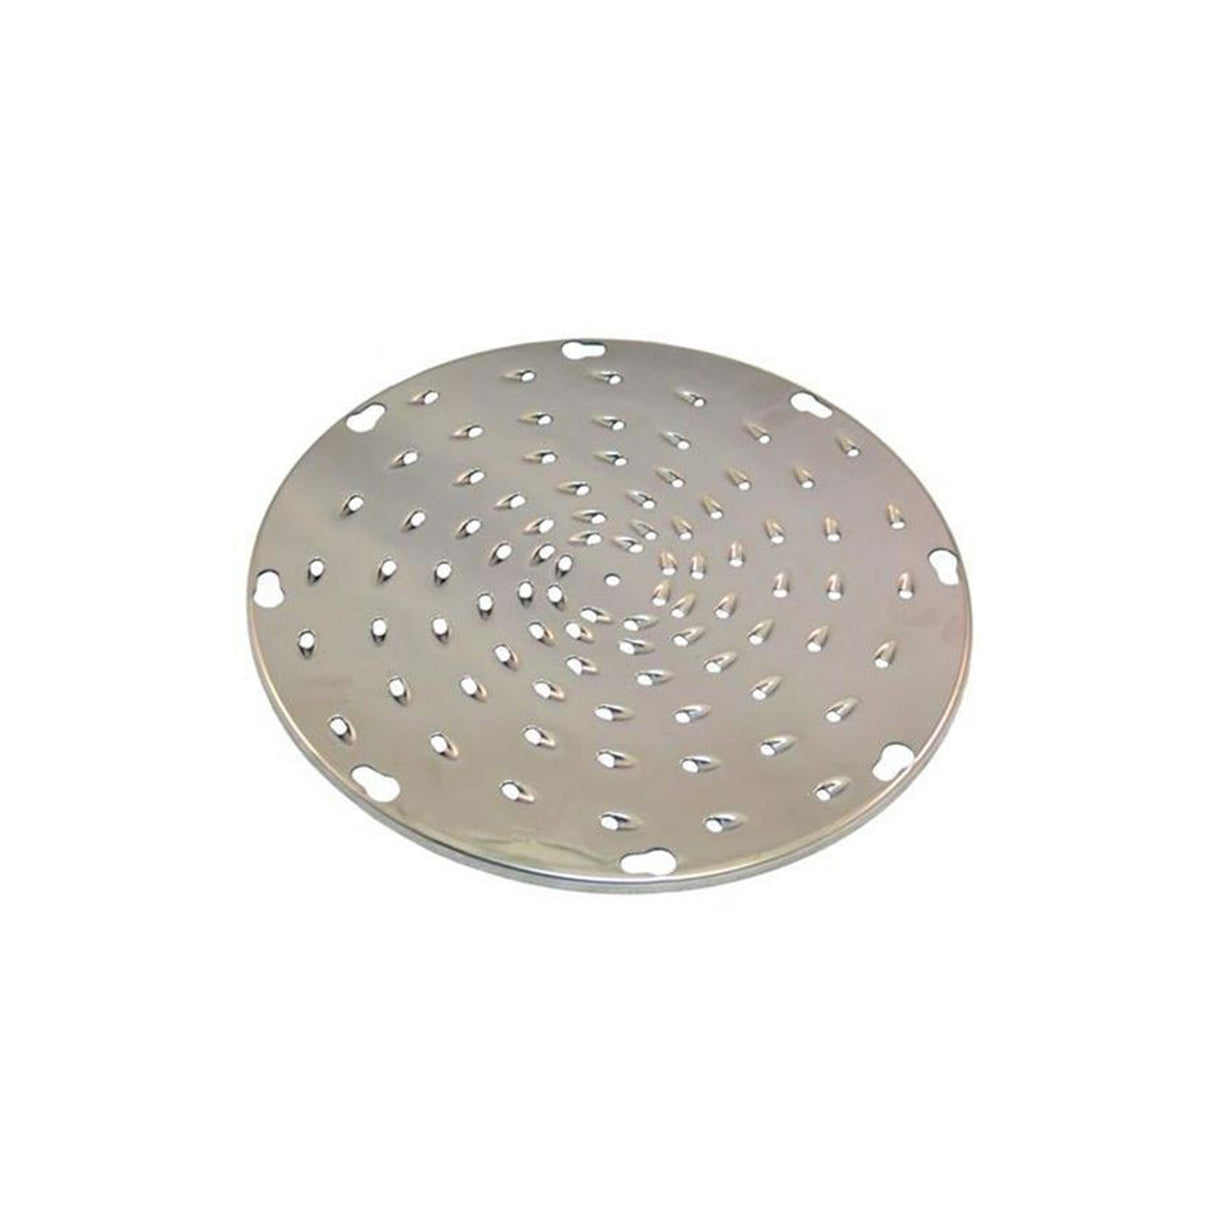 UVS-9316 | S/Steel Shredder Disc, 3/16" Holes